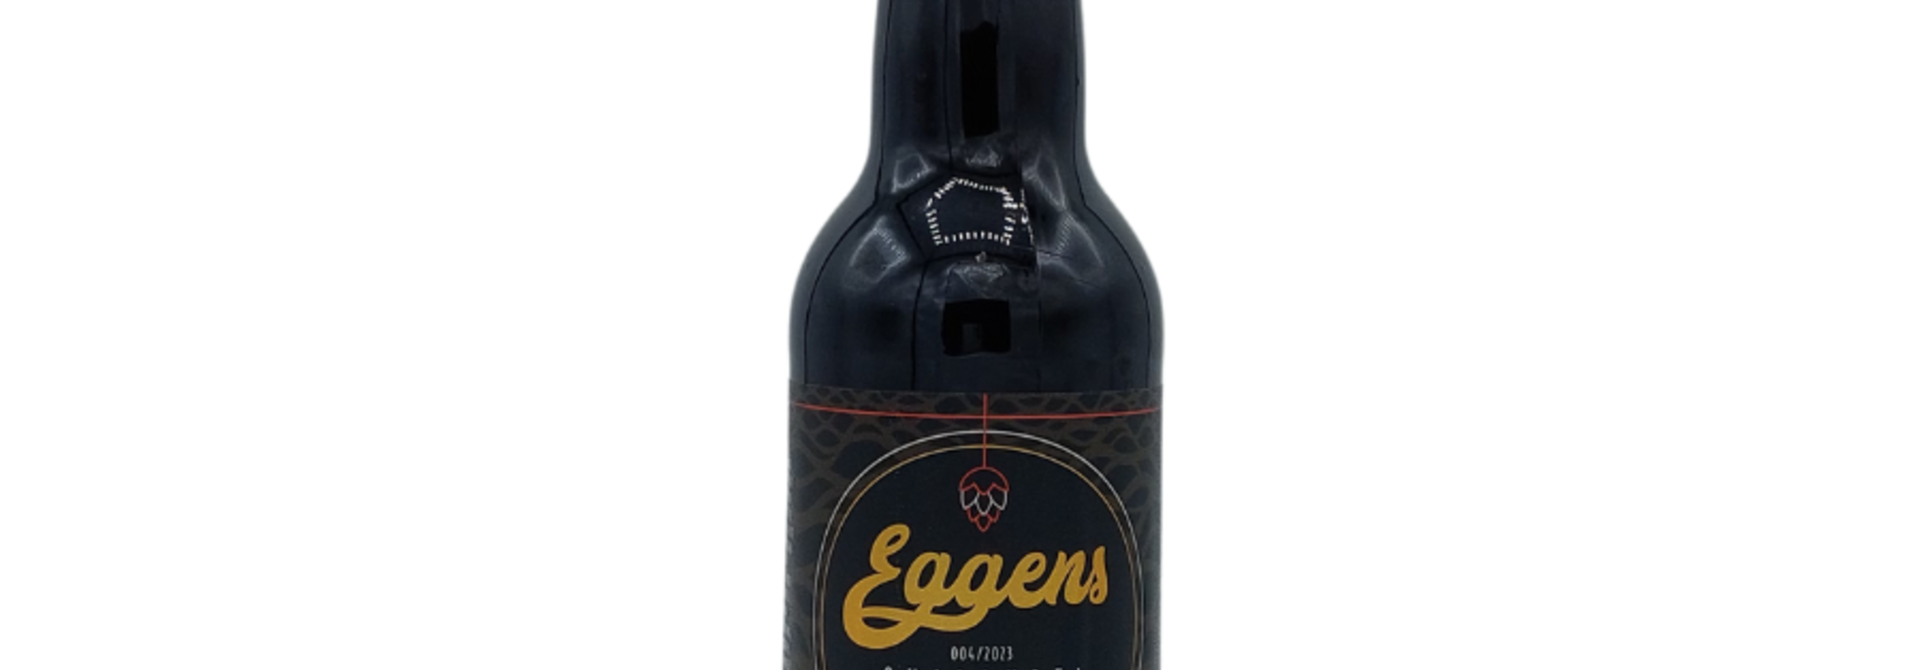 Eggens Quadrupel Vatgerijpt 2023 #4 Auchentoshan Whisky 33cl 11%